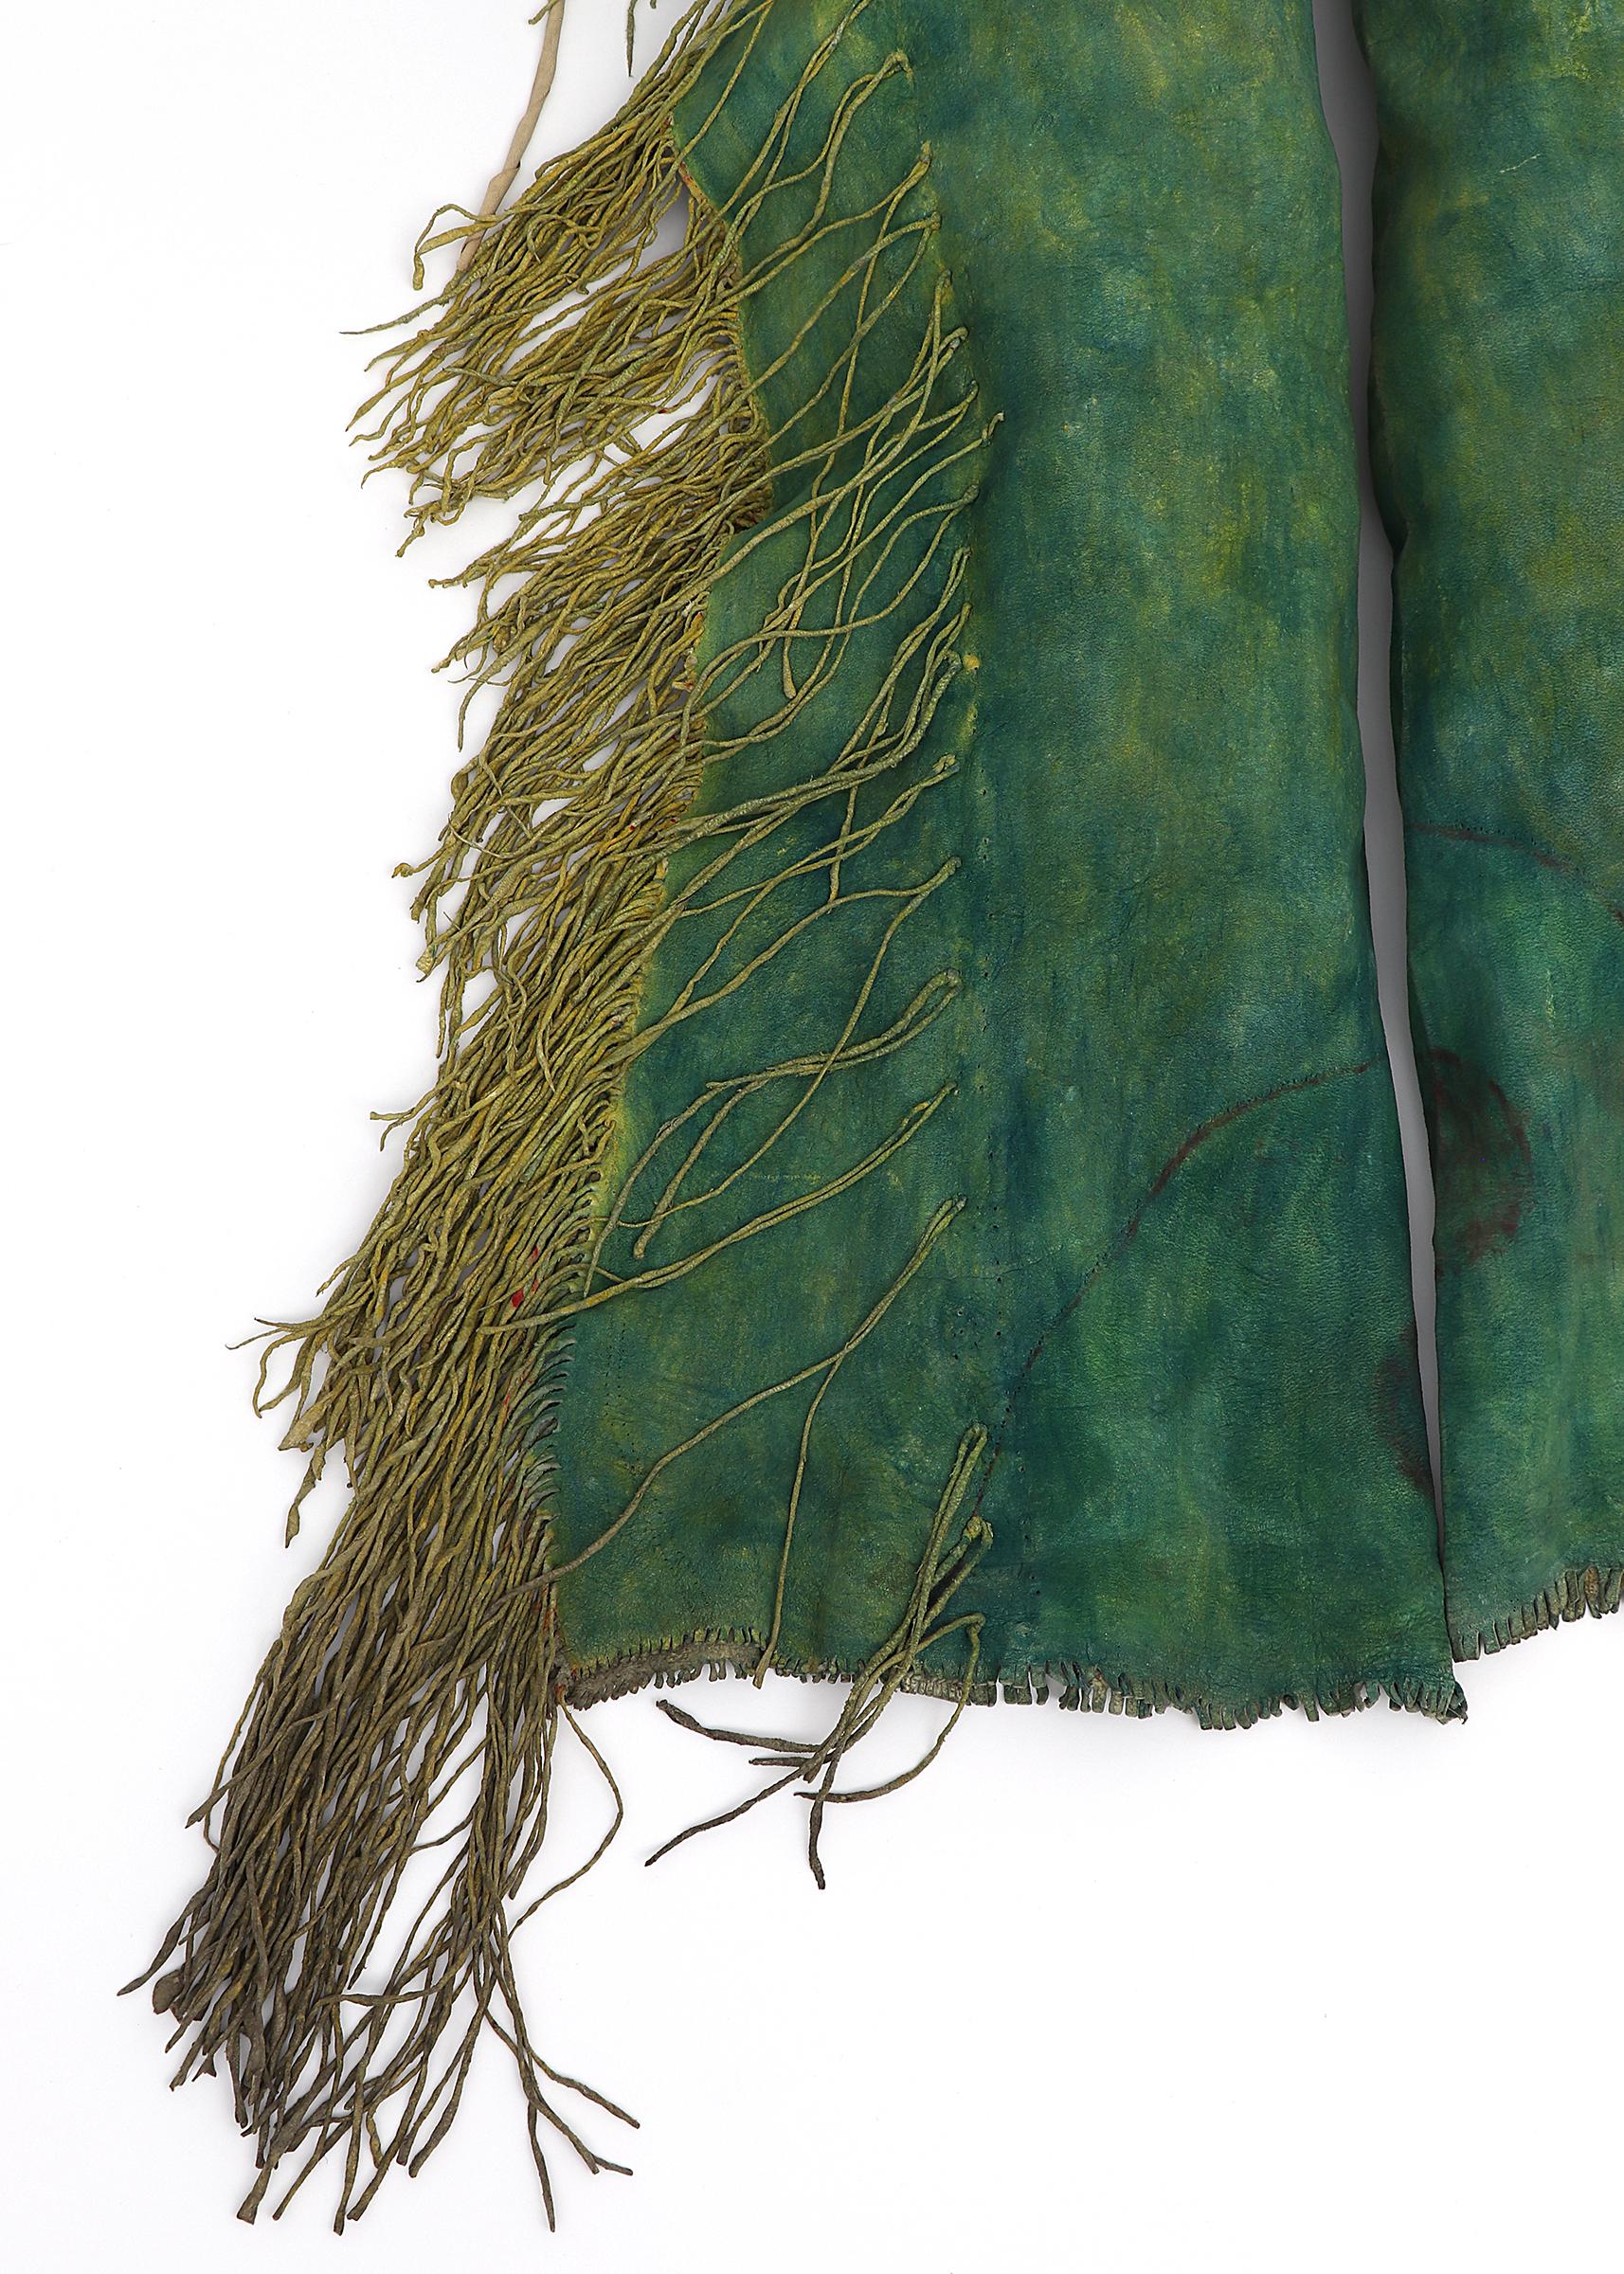 Qualité muséale Légères indiennes des plaines de l'Arapaho du Sud (Hinono'ei), vers les années 1880.  Fabriqué en cuir tanné indigène teint en vert viridien et en jaune ocre, orné de perles de verre. La peau est souple et flexible et la frange est